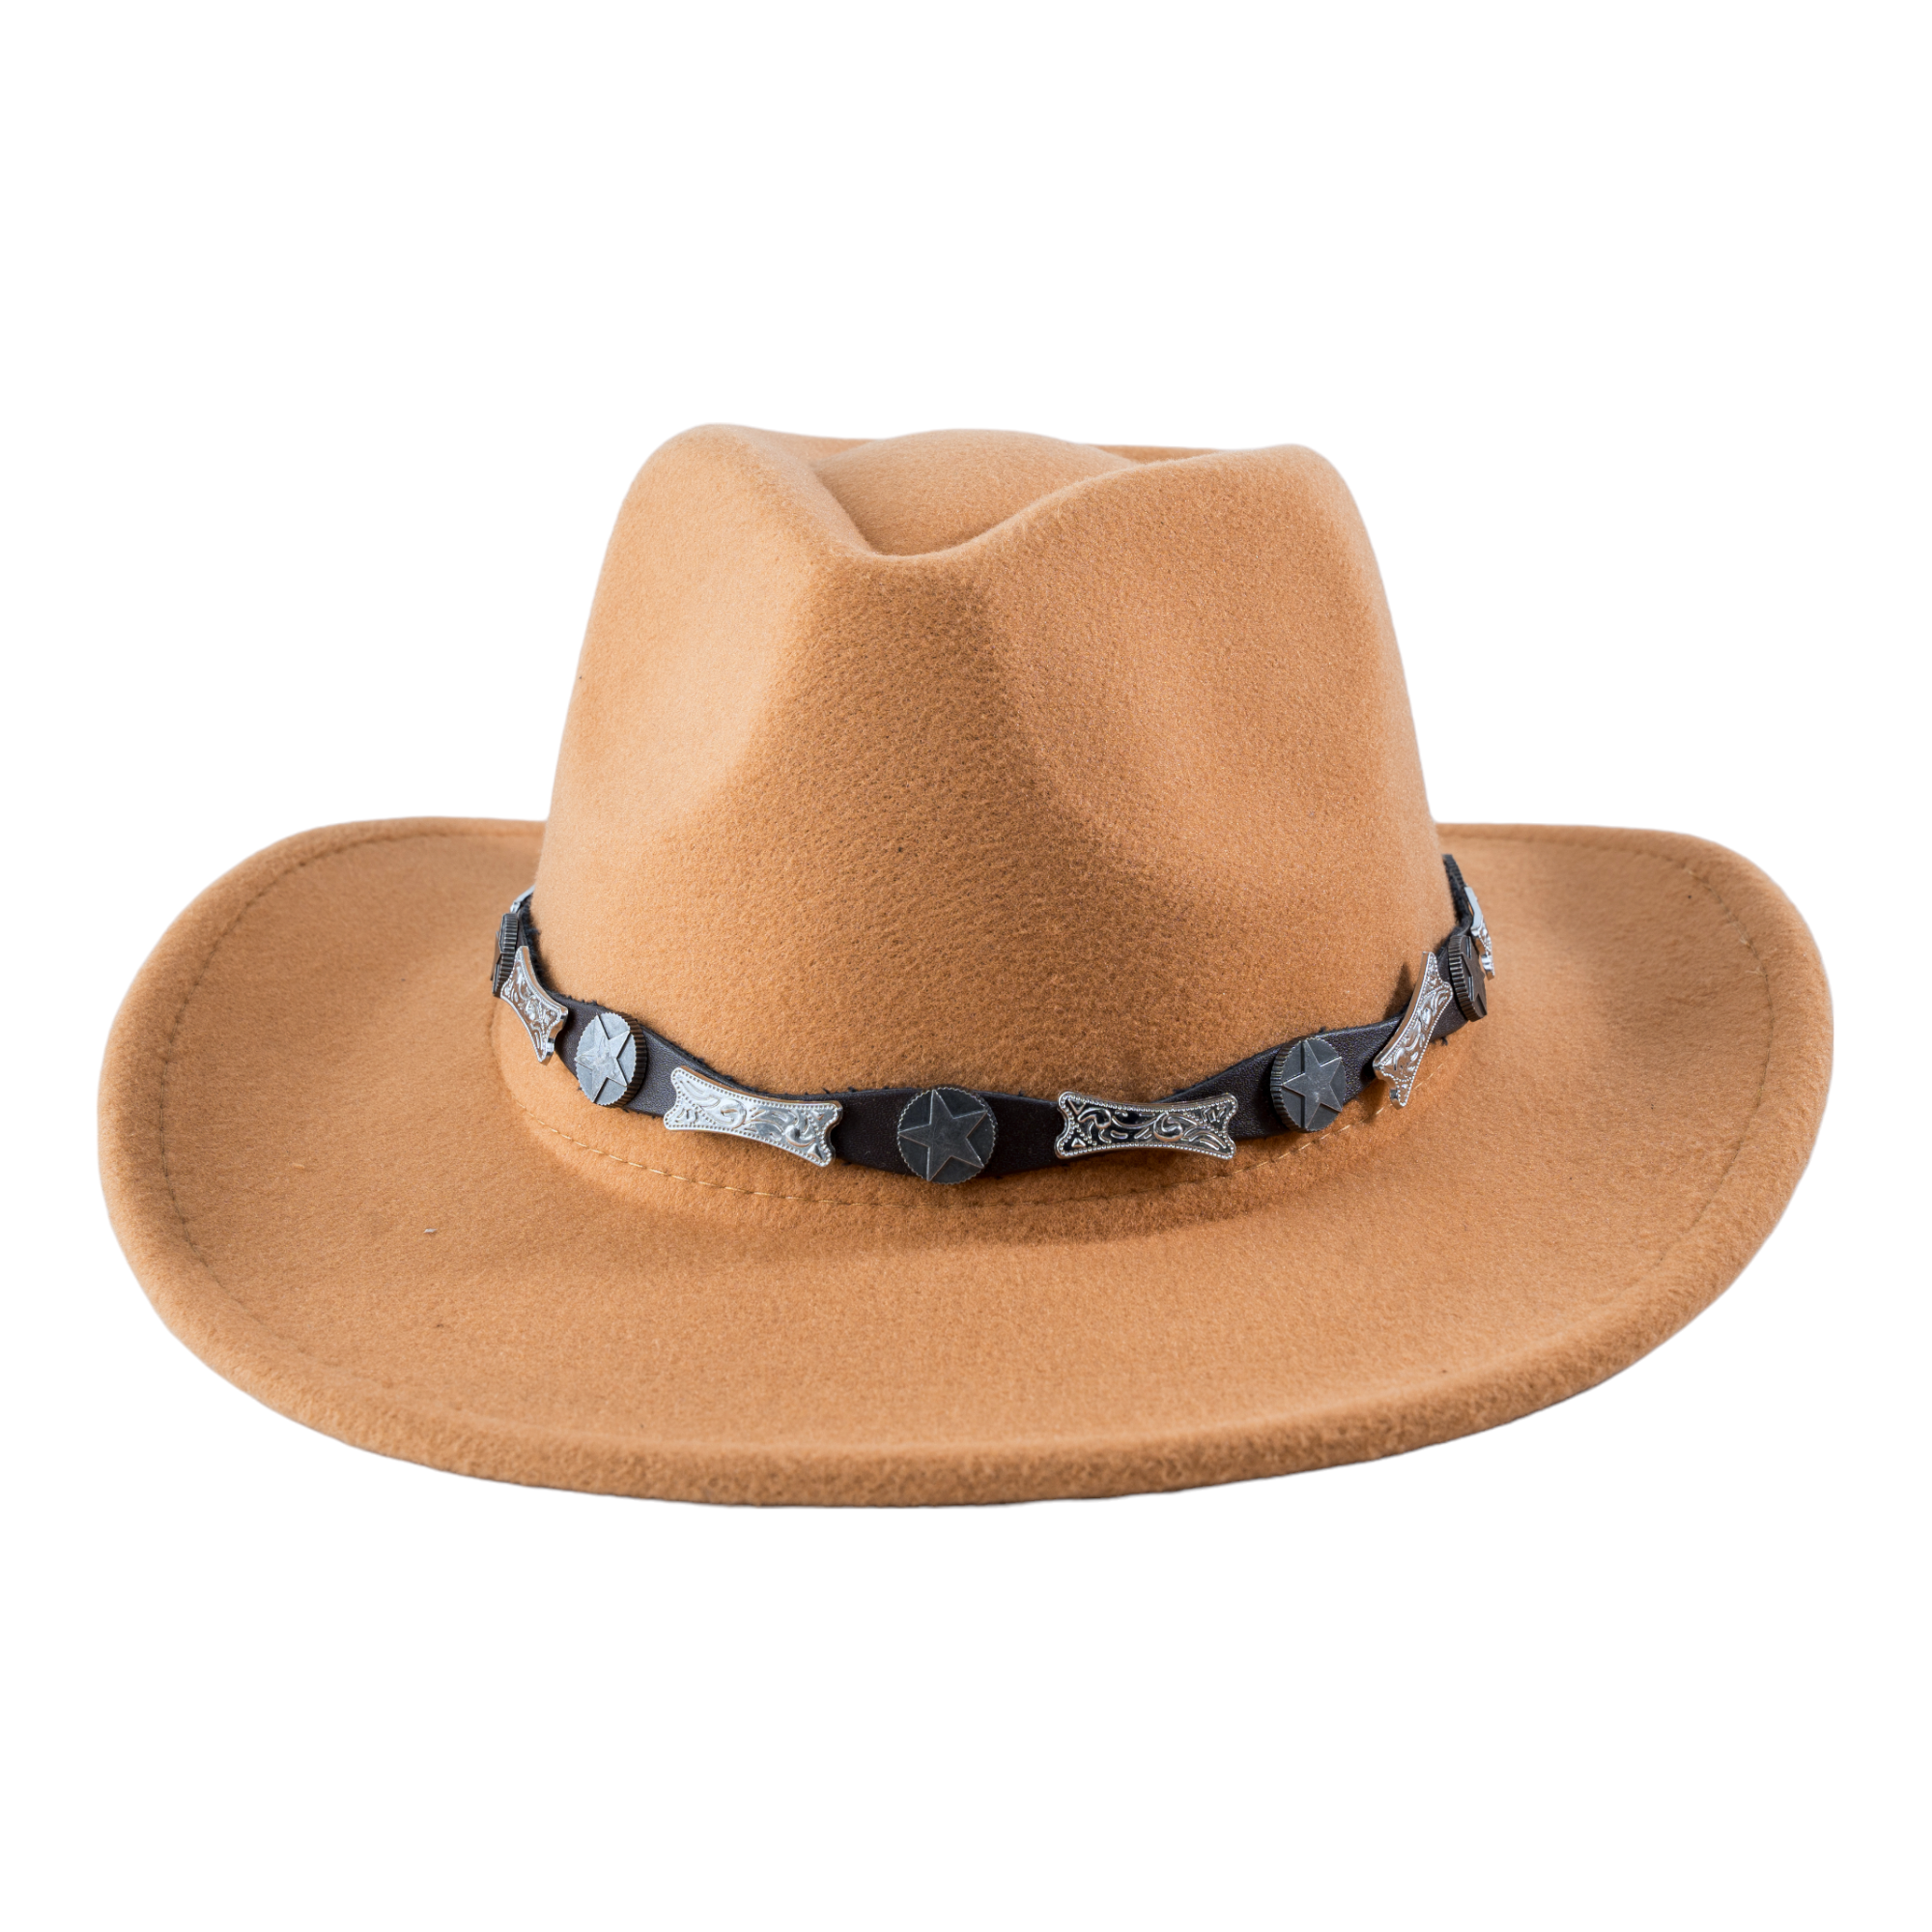 Chokore Cowboy Hat with Buckle Belt (Beige)